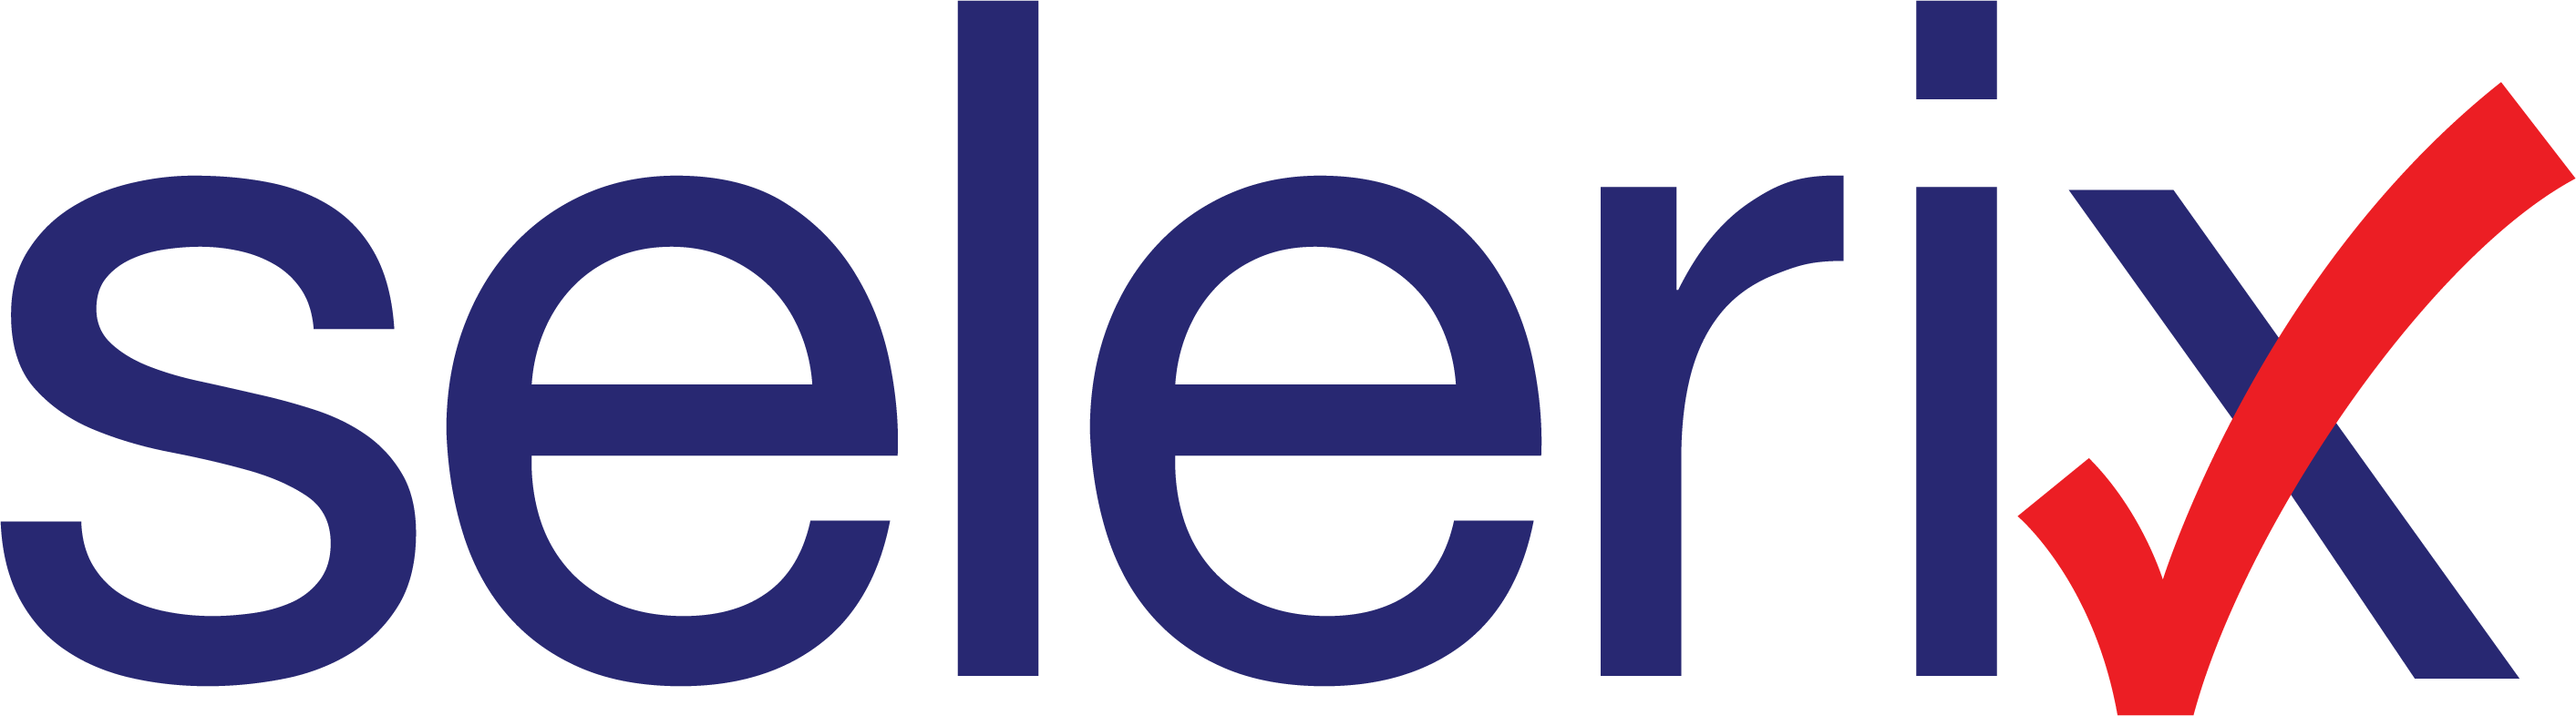 selerix-logo.png